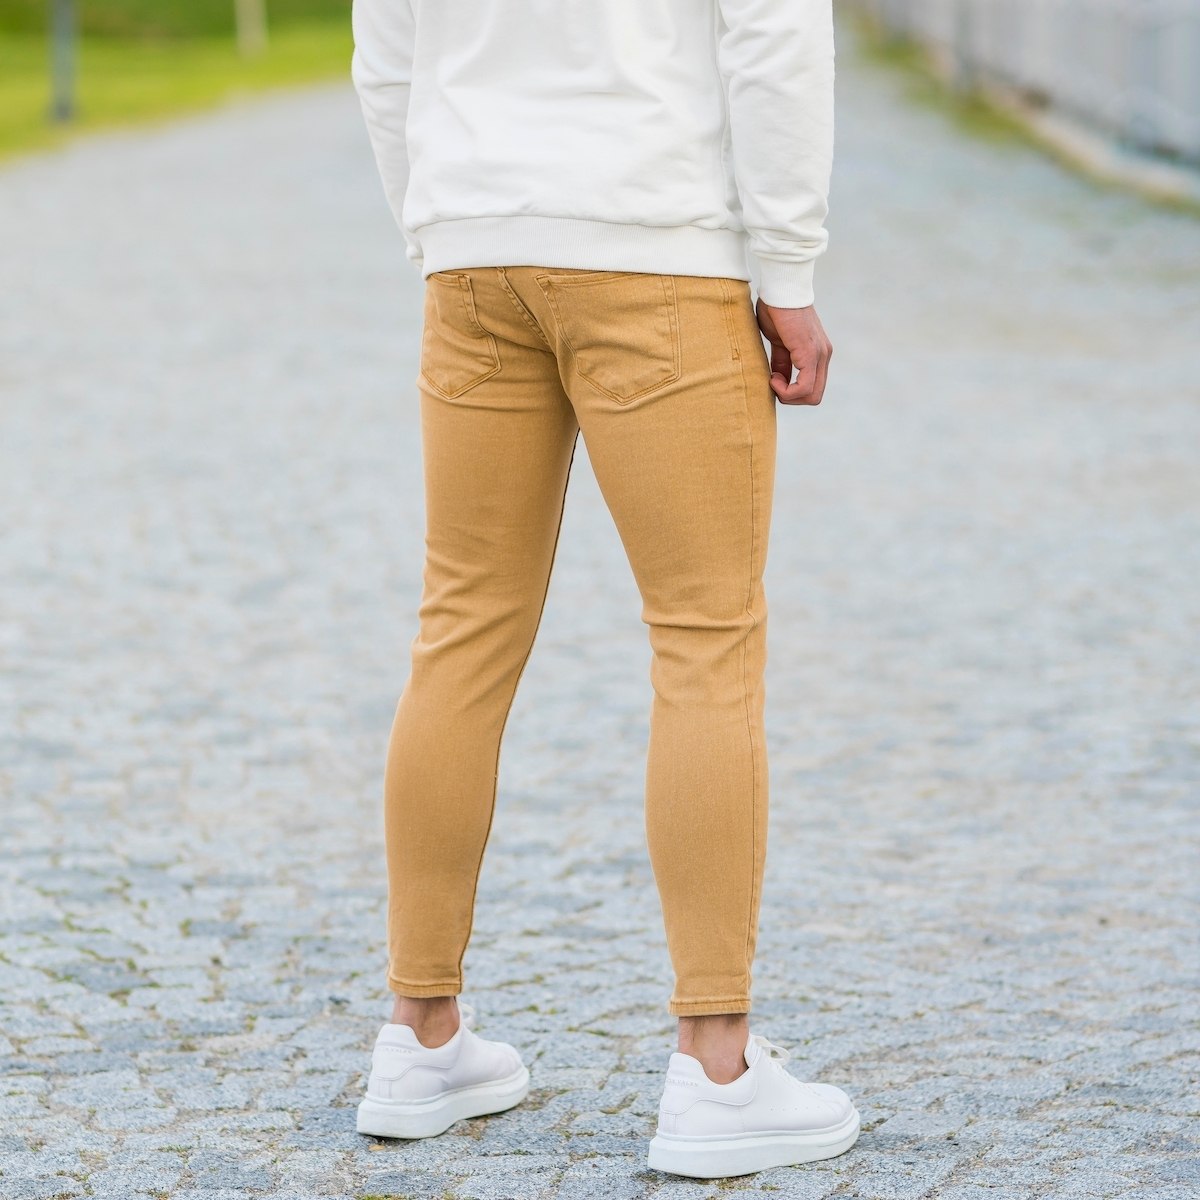 Men's Basic Skinny Jeans In Mustard | Martin Valen